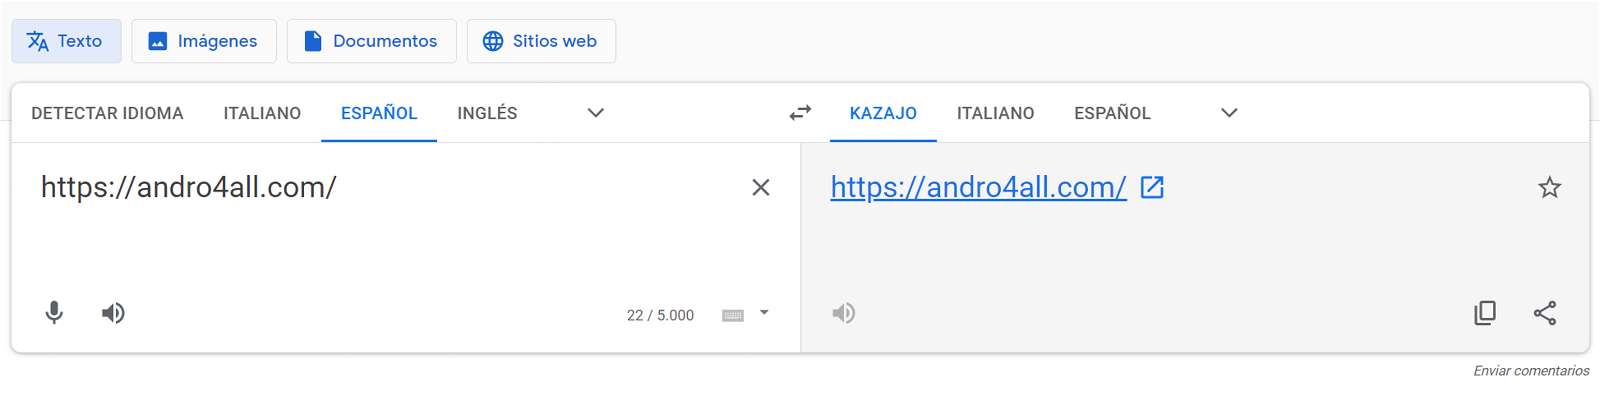 Cómo utilizar el Traductor de Google sin